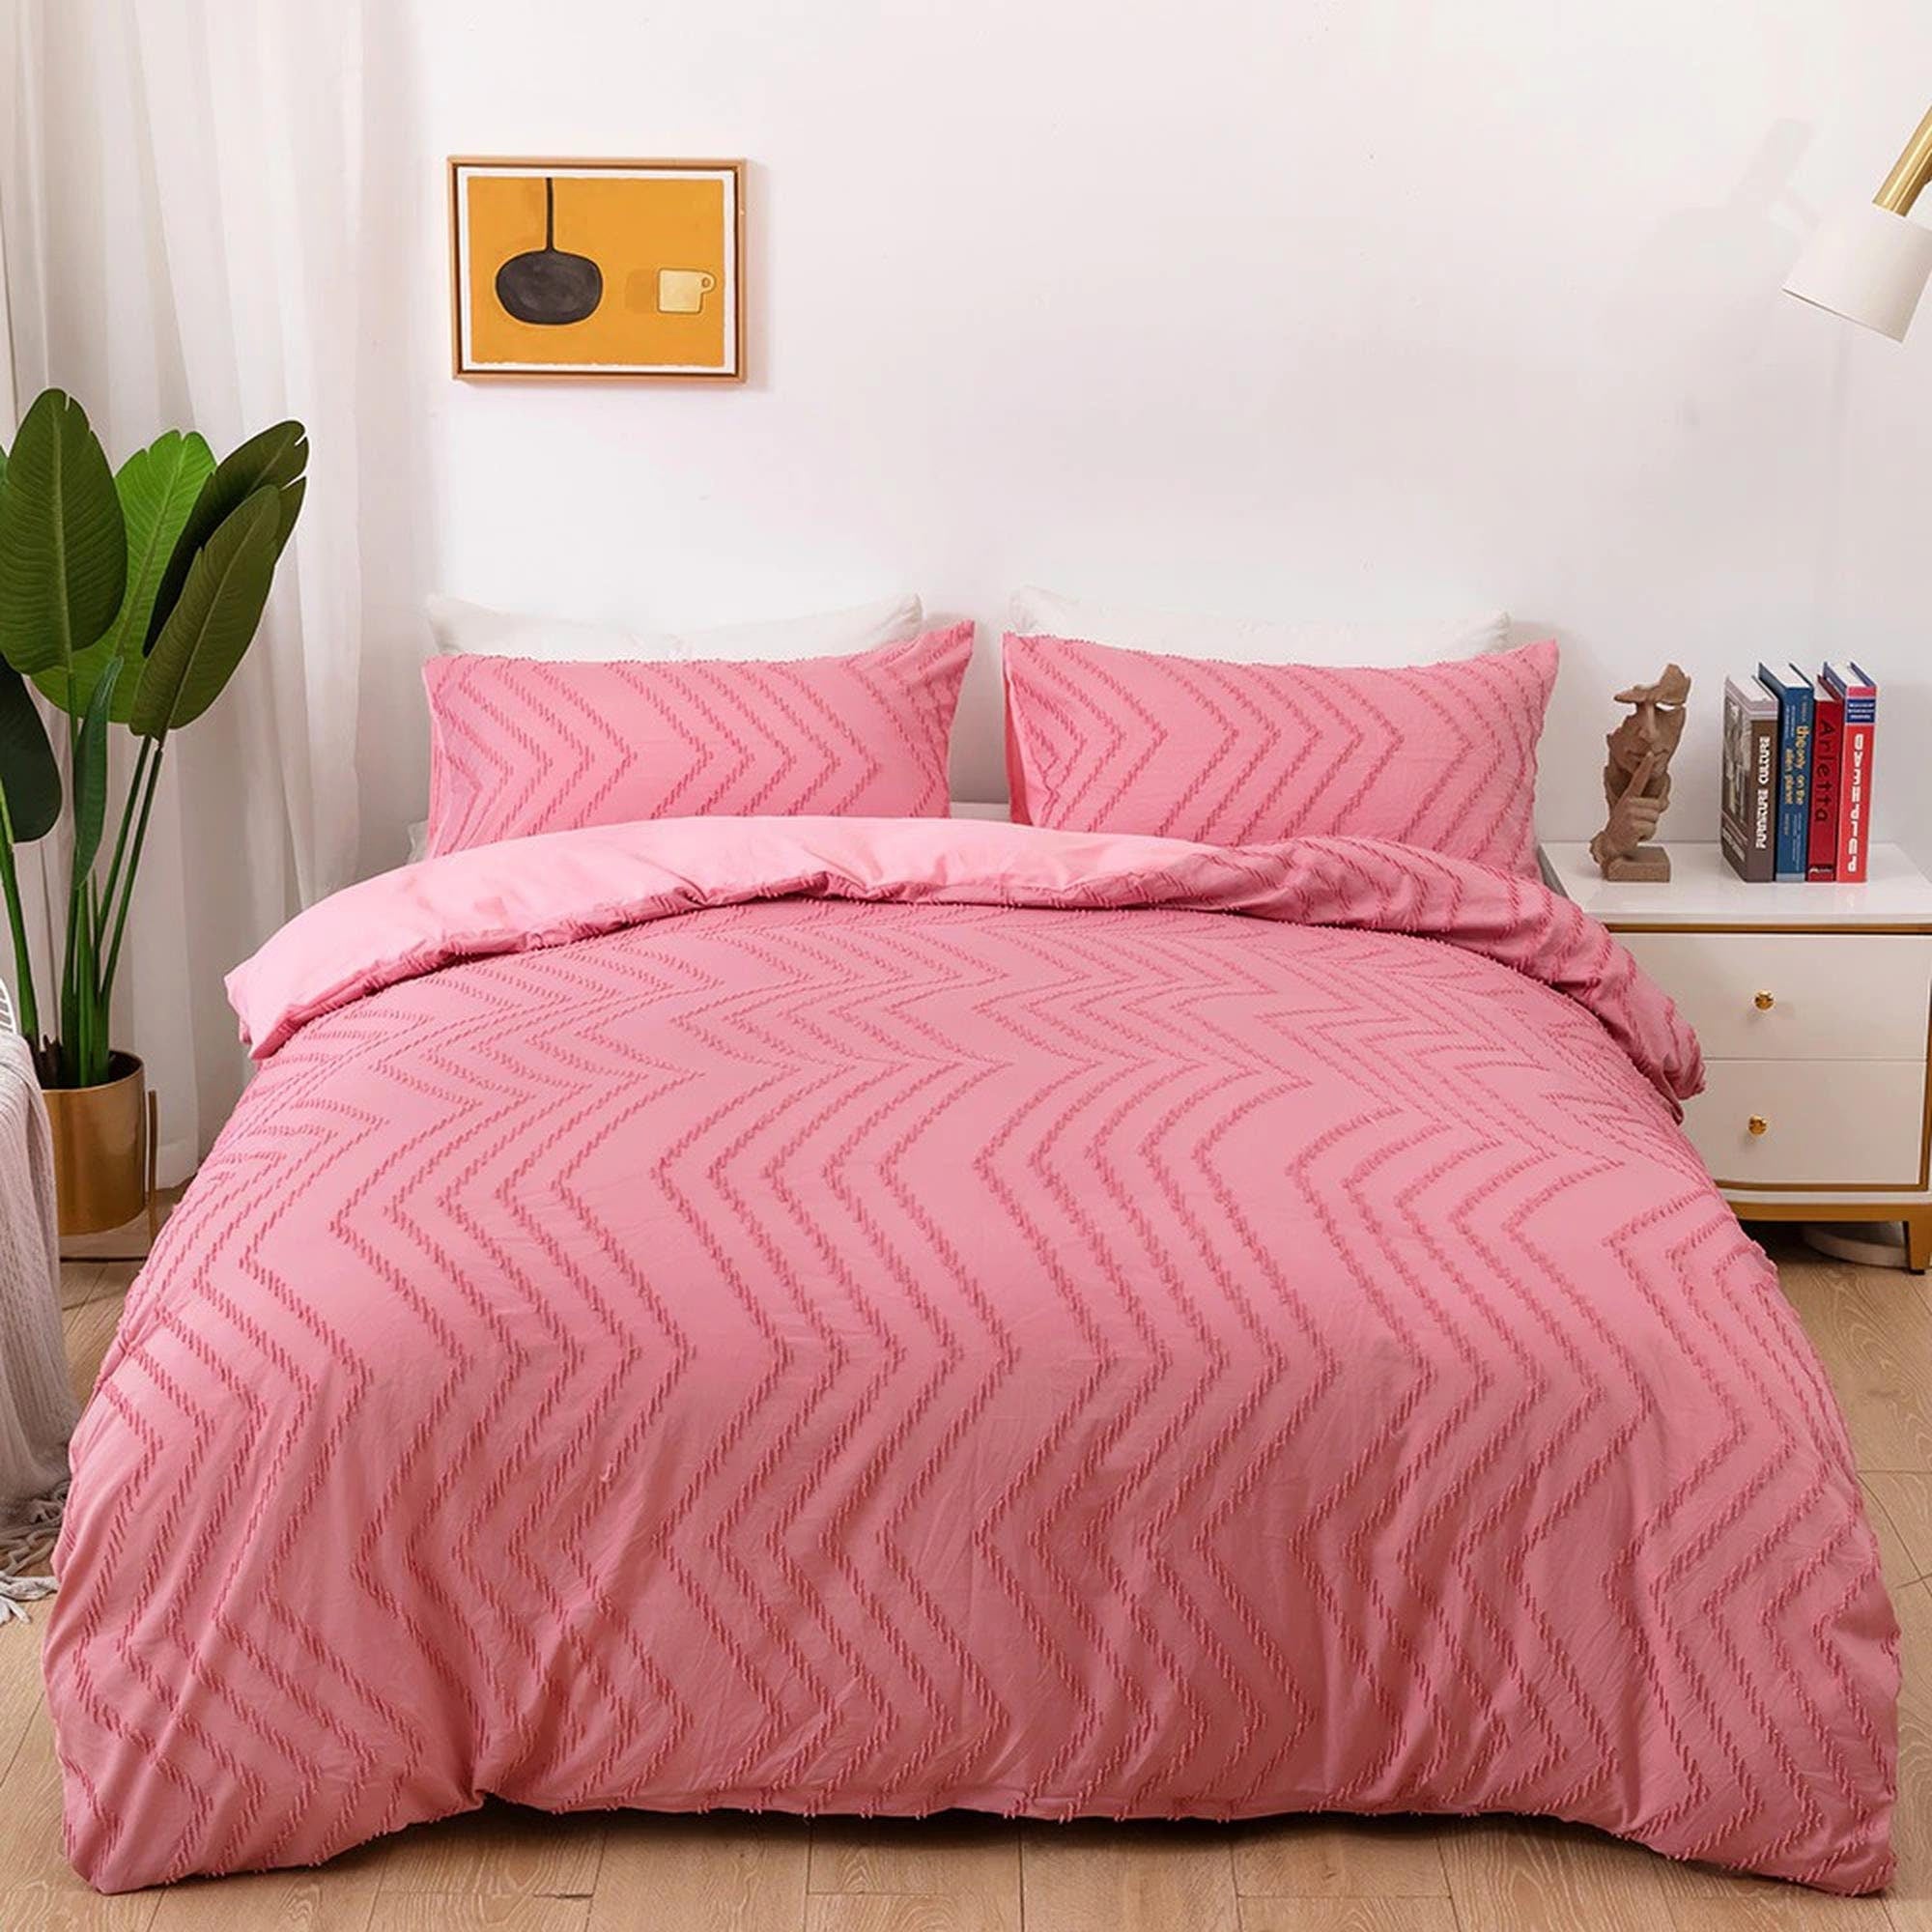 daintyduvet Pink Tufted Bed, Tufted Duvet Cover Set, Pom Pom Chevron Chenille Quilt, Boho Bed Cover, Shabby Chic Bedding, Textured Duvet King Queen